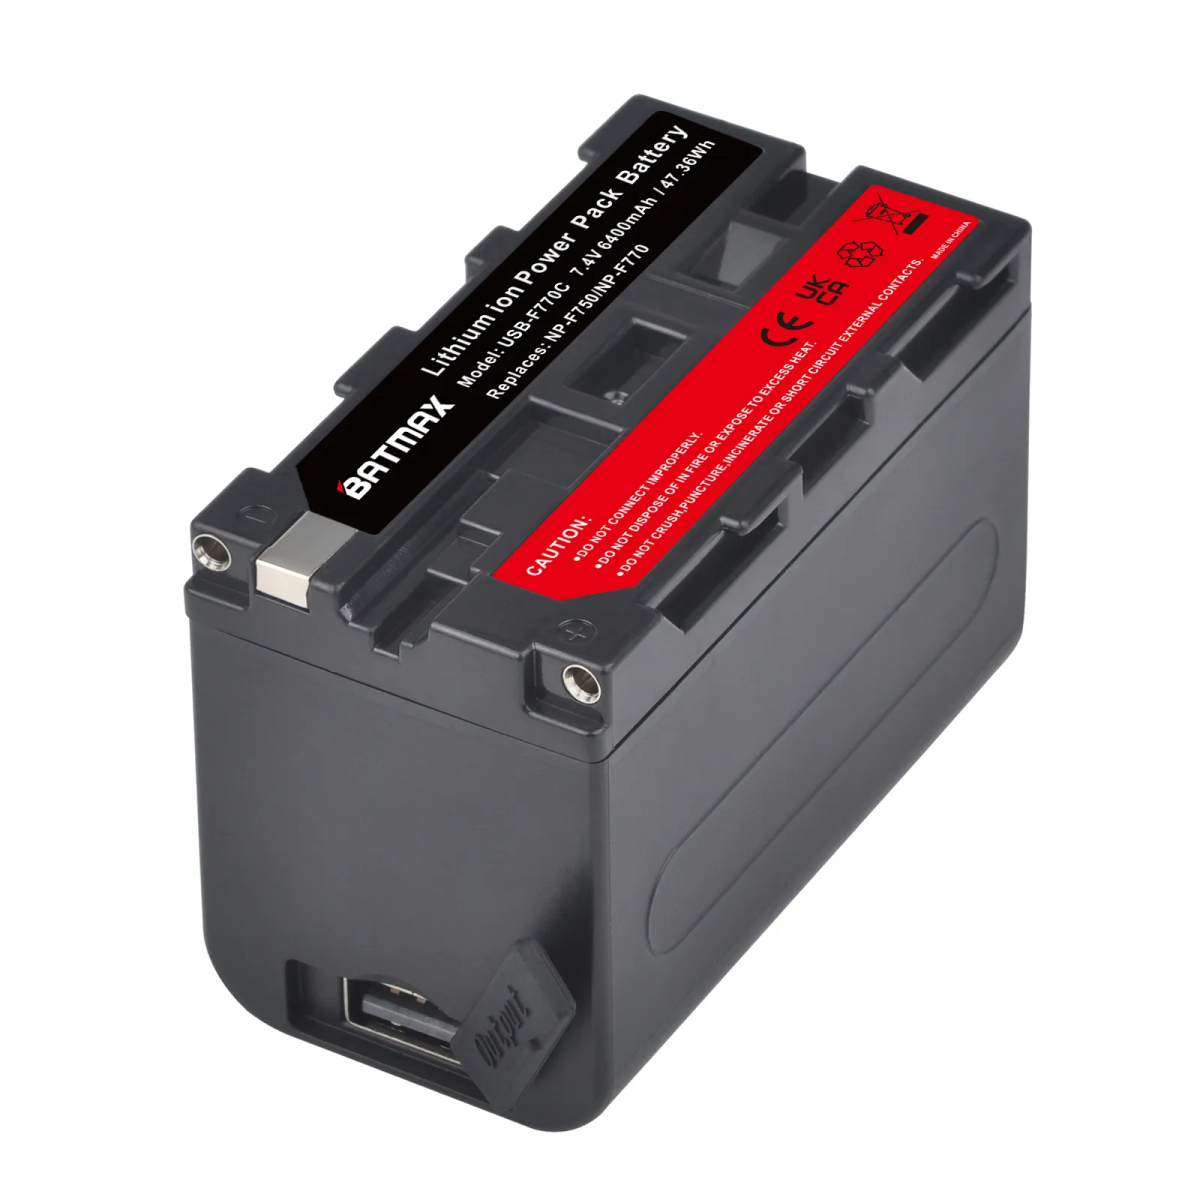 Аккумулятор ABC для видеокамер Sony NP-F750, светодиодных осветителей, Power Bank USB-F770C / 6400мАч